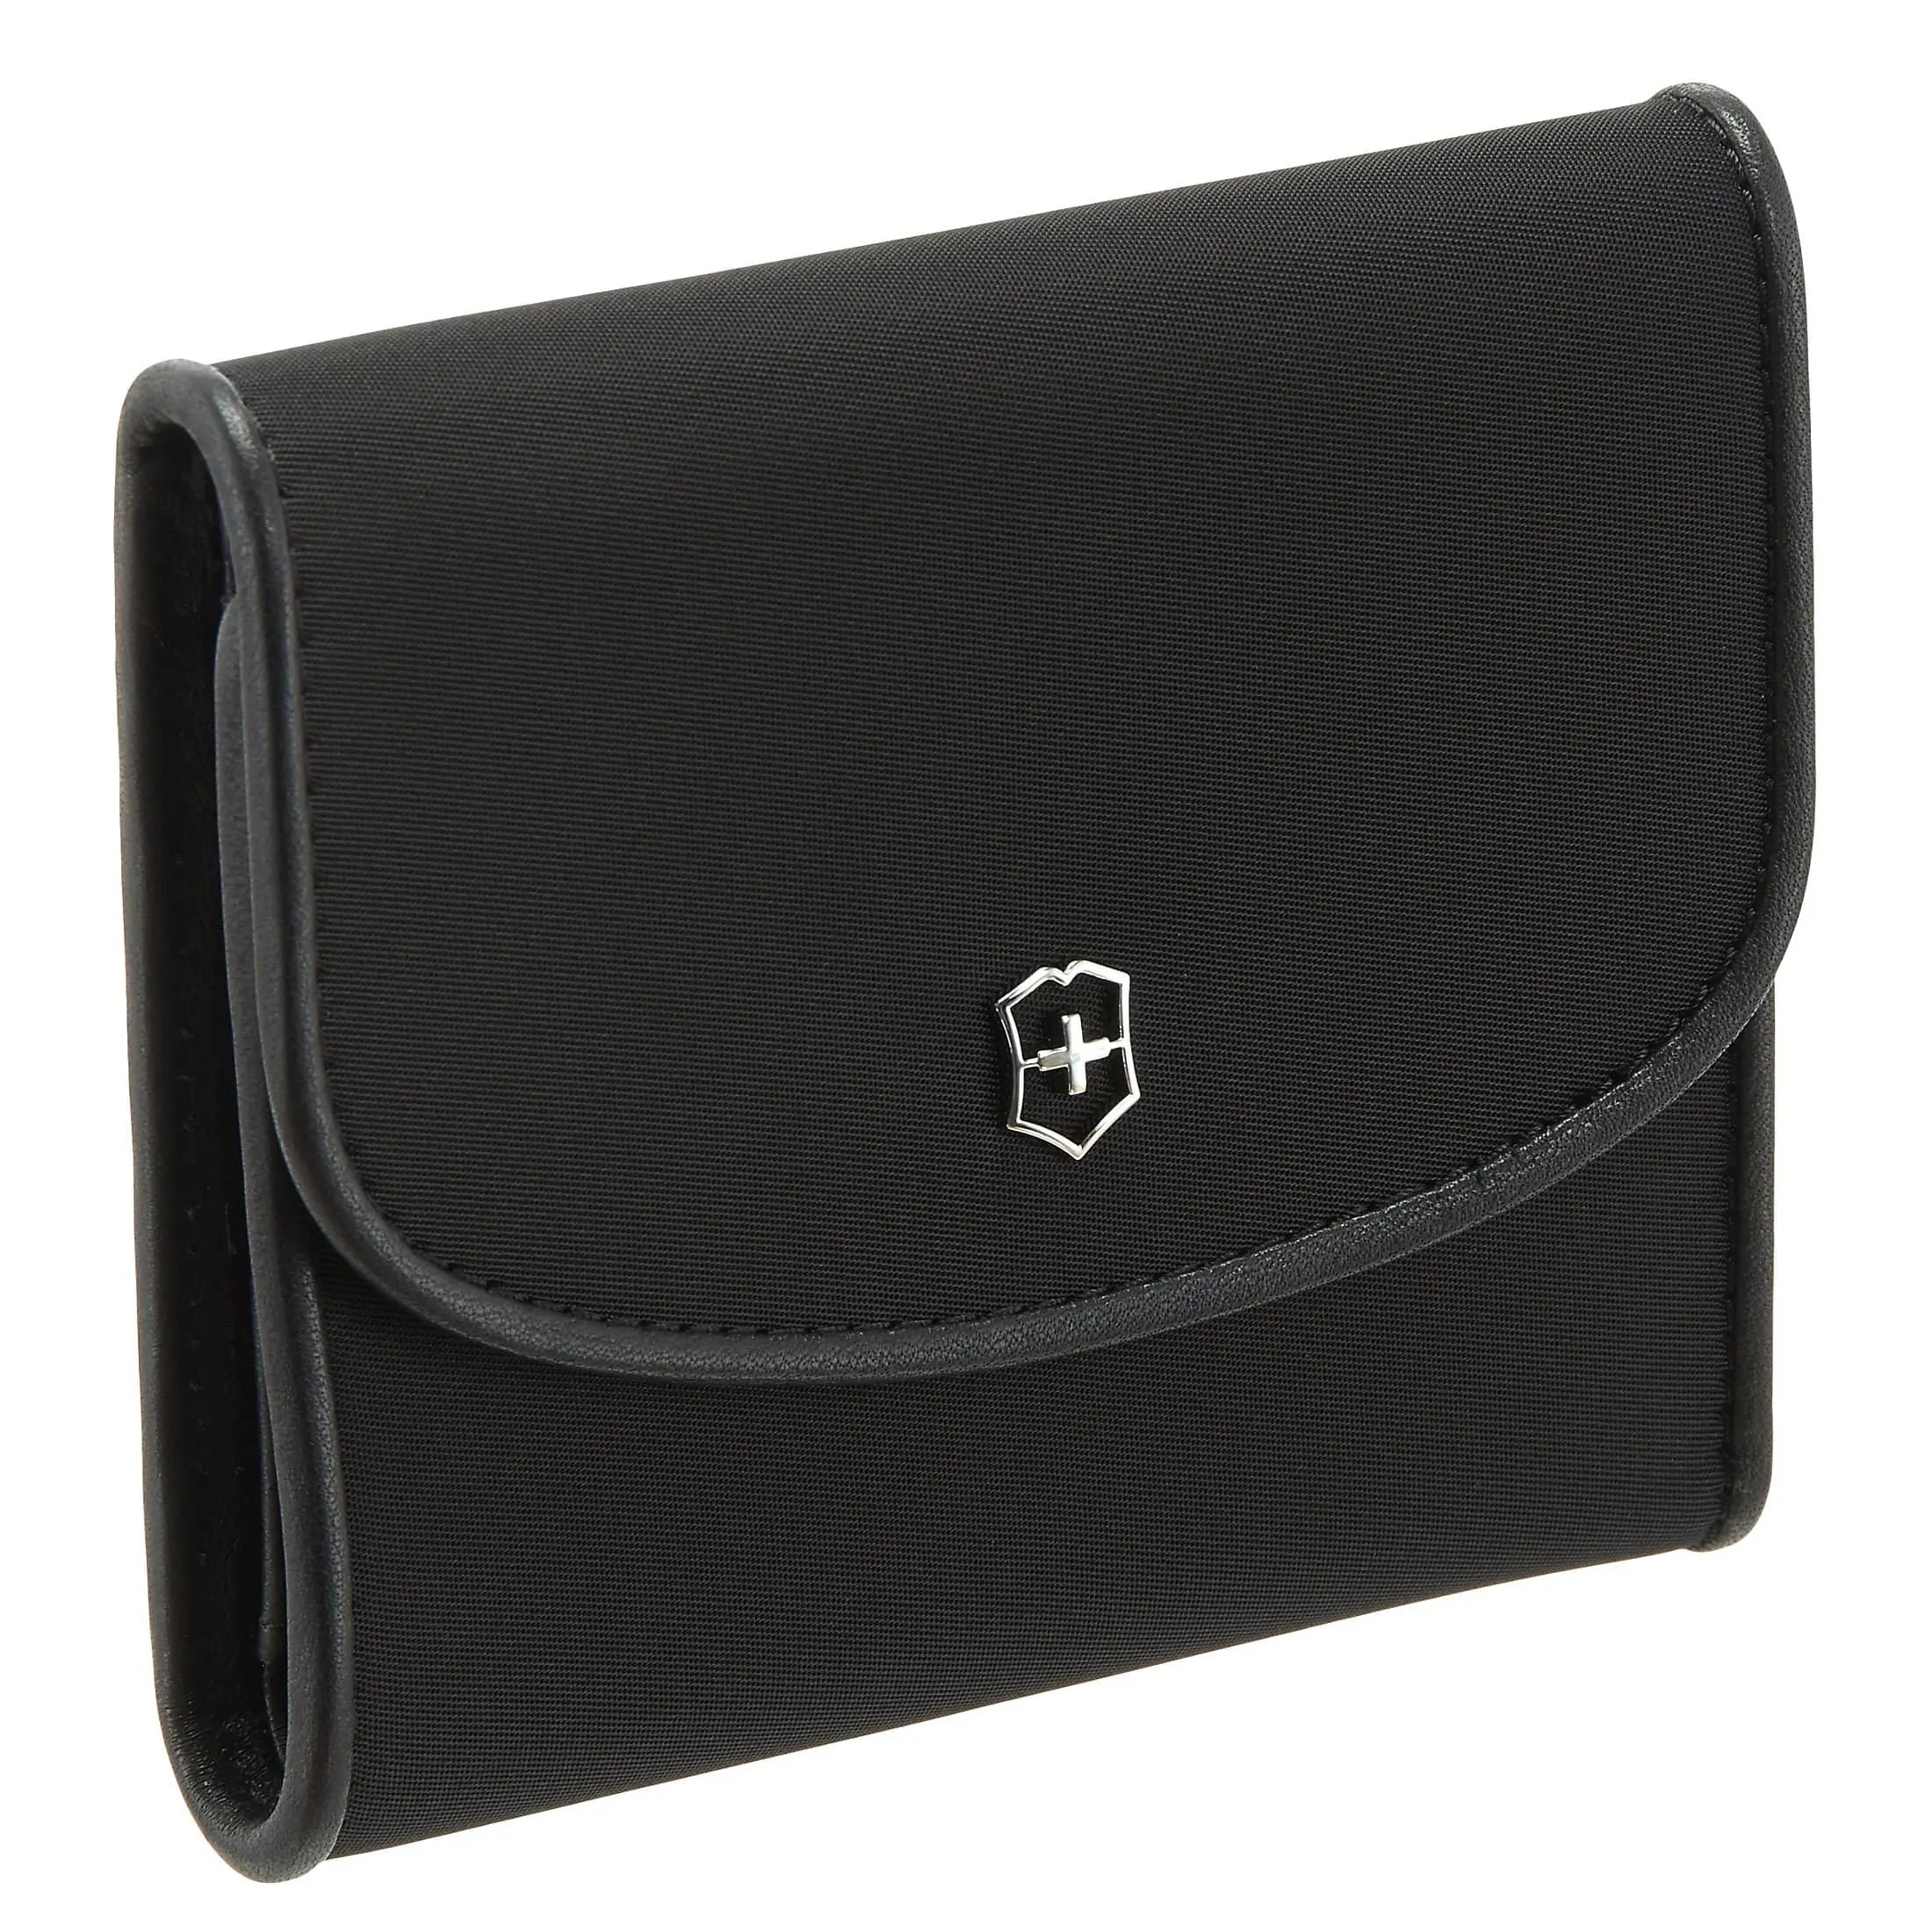 Victorinox Victoria 2.0 Envelope Wallet purse 11 cm - black